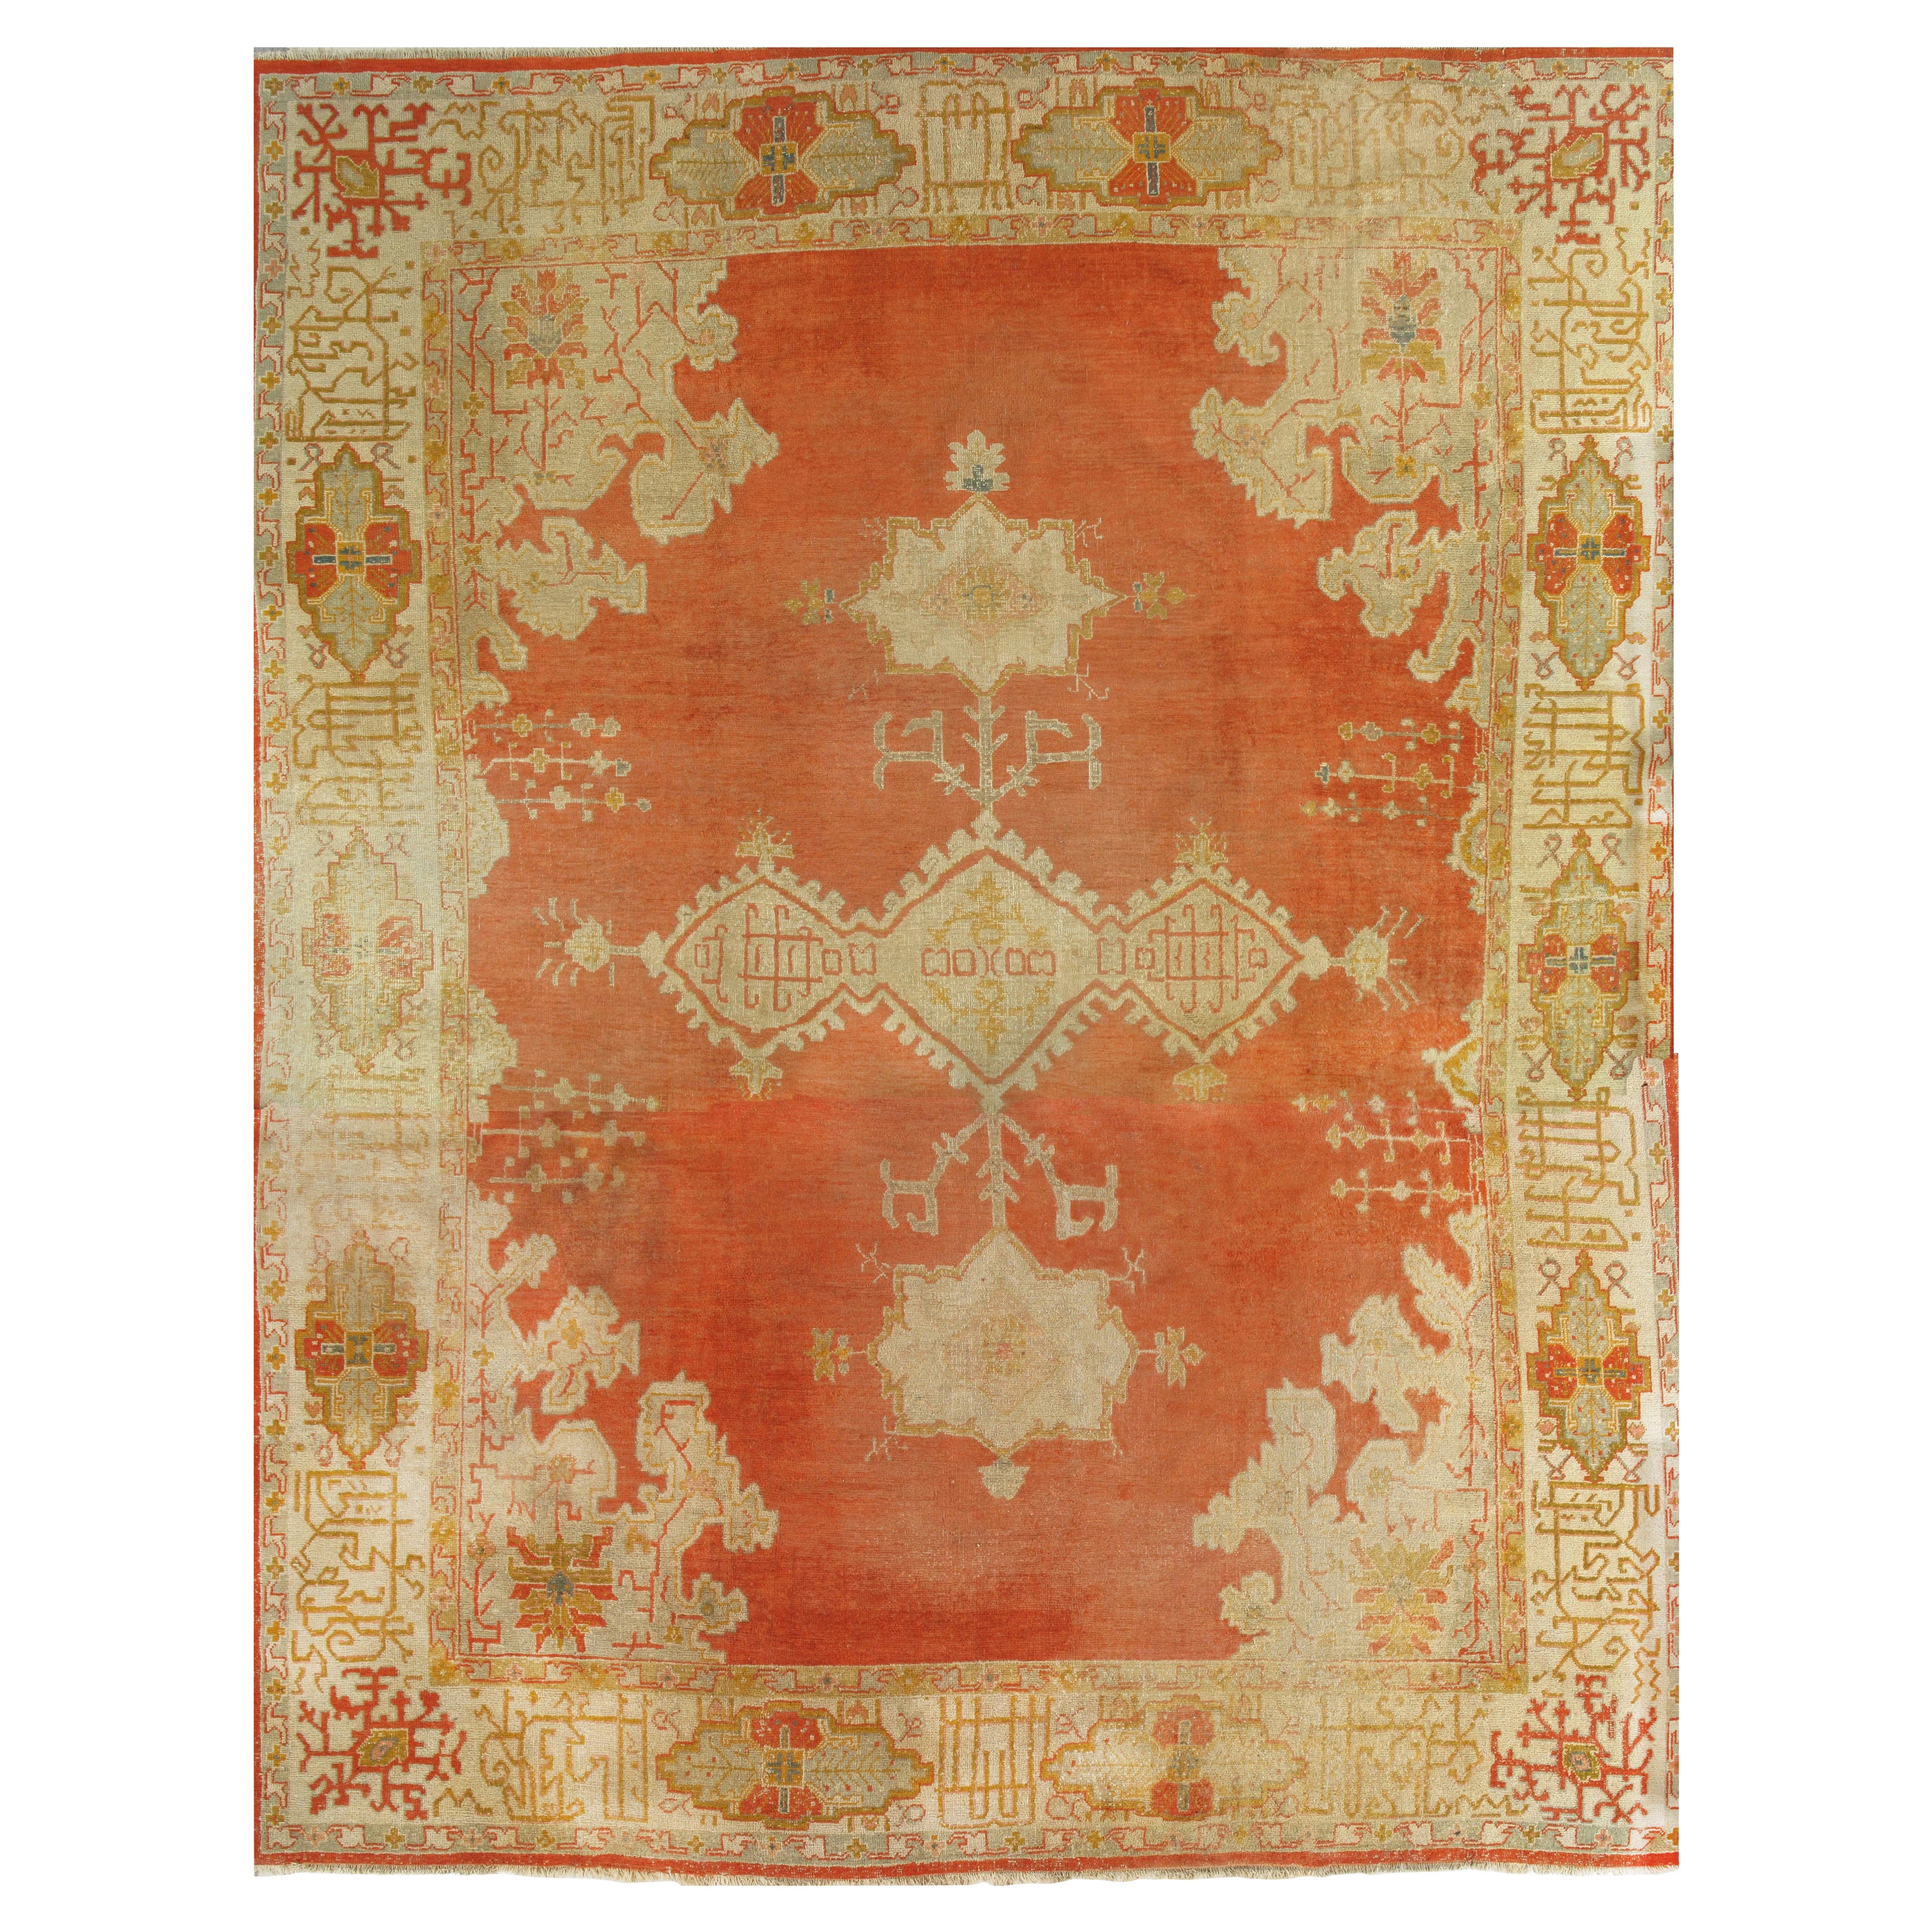 Antiker Oushak-Teppich, orientalischer Teppich, handgefertigter Teppich in Safran, Hellblau und Koralle